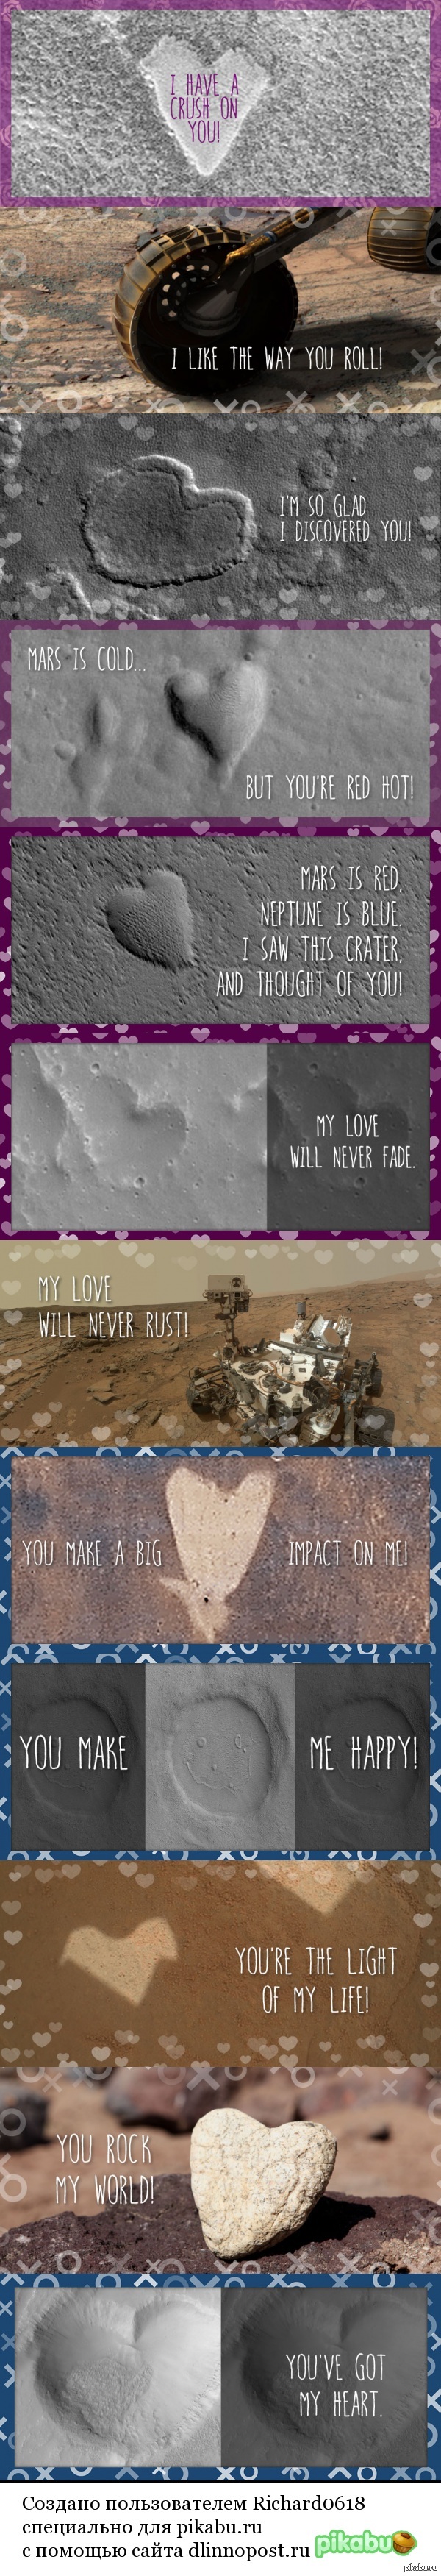     NASA                http://mars.nasa.gov/free-holiday-ecard/love-valentine/#Send-A-Card